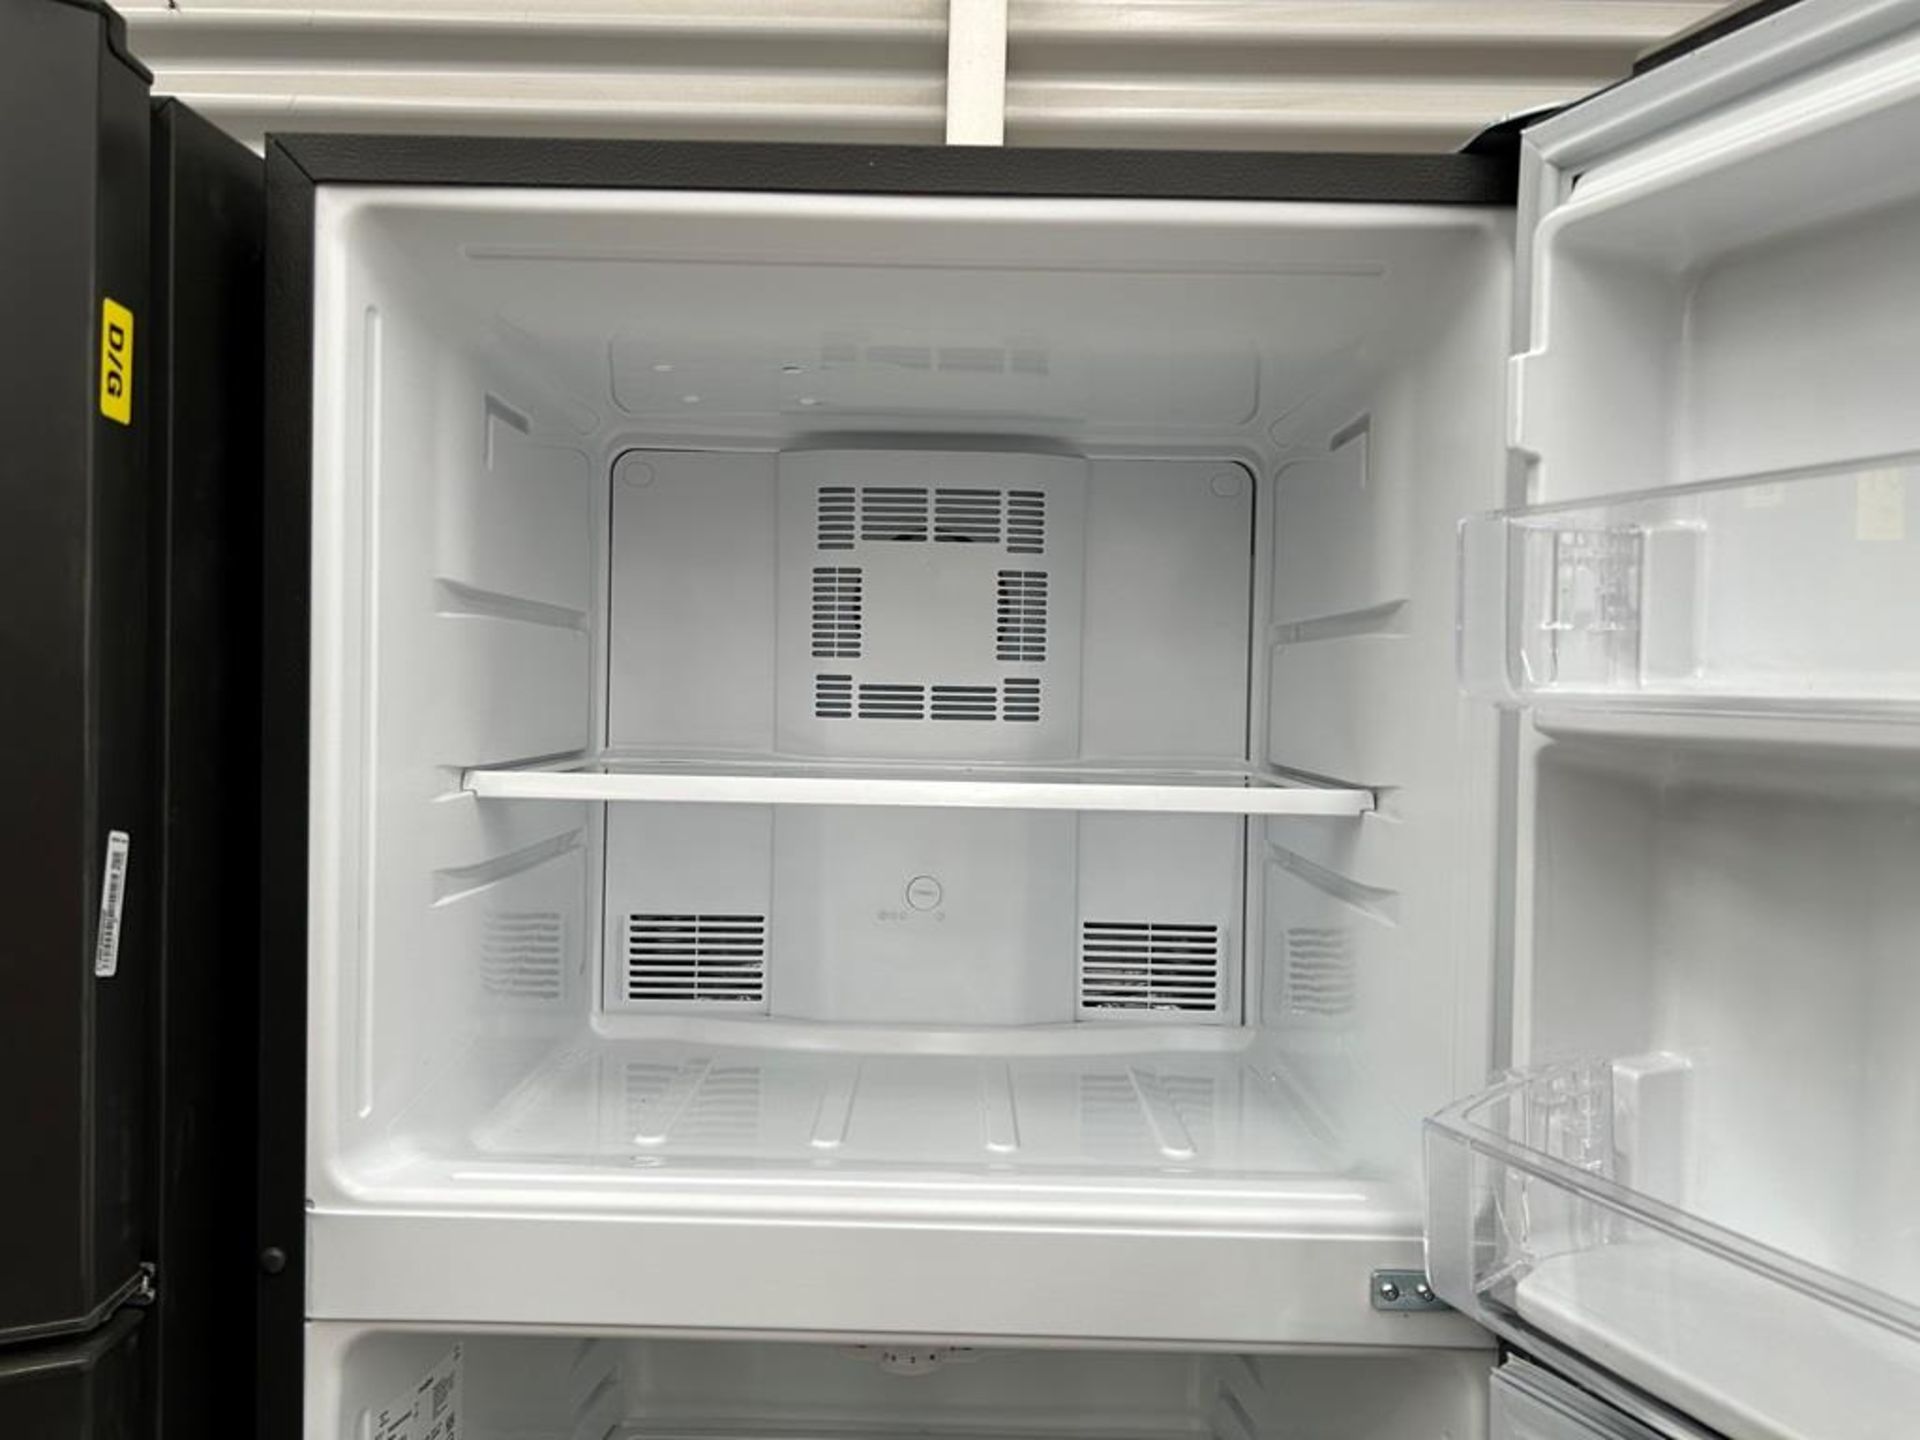 Lote de 2 refrigeradores contiene: 1 Refrigerador con dispensador de agua Marca MABE, Modelo RME360 - Image 13 of 16